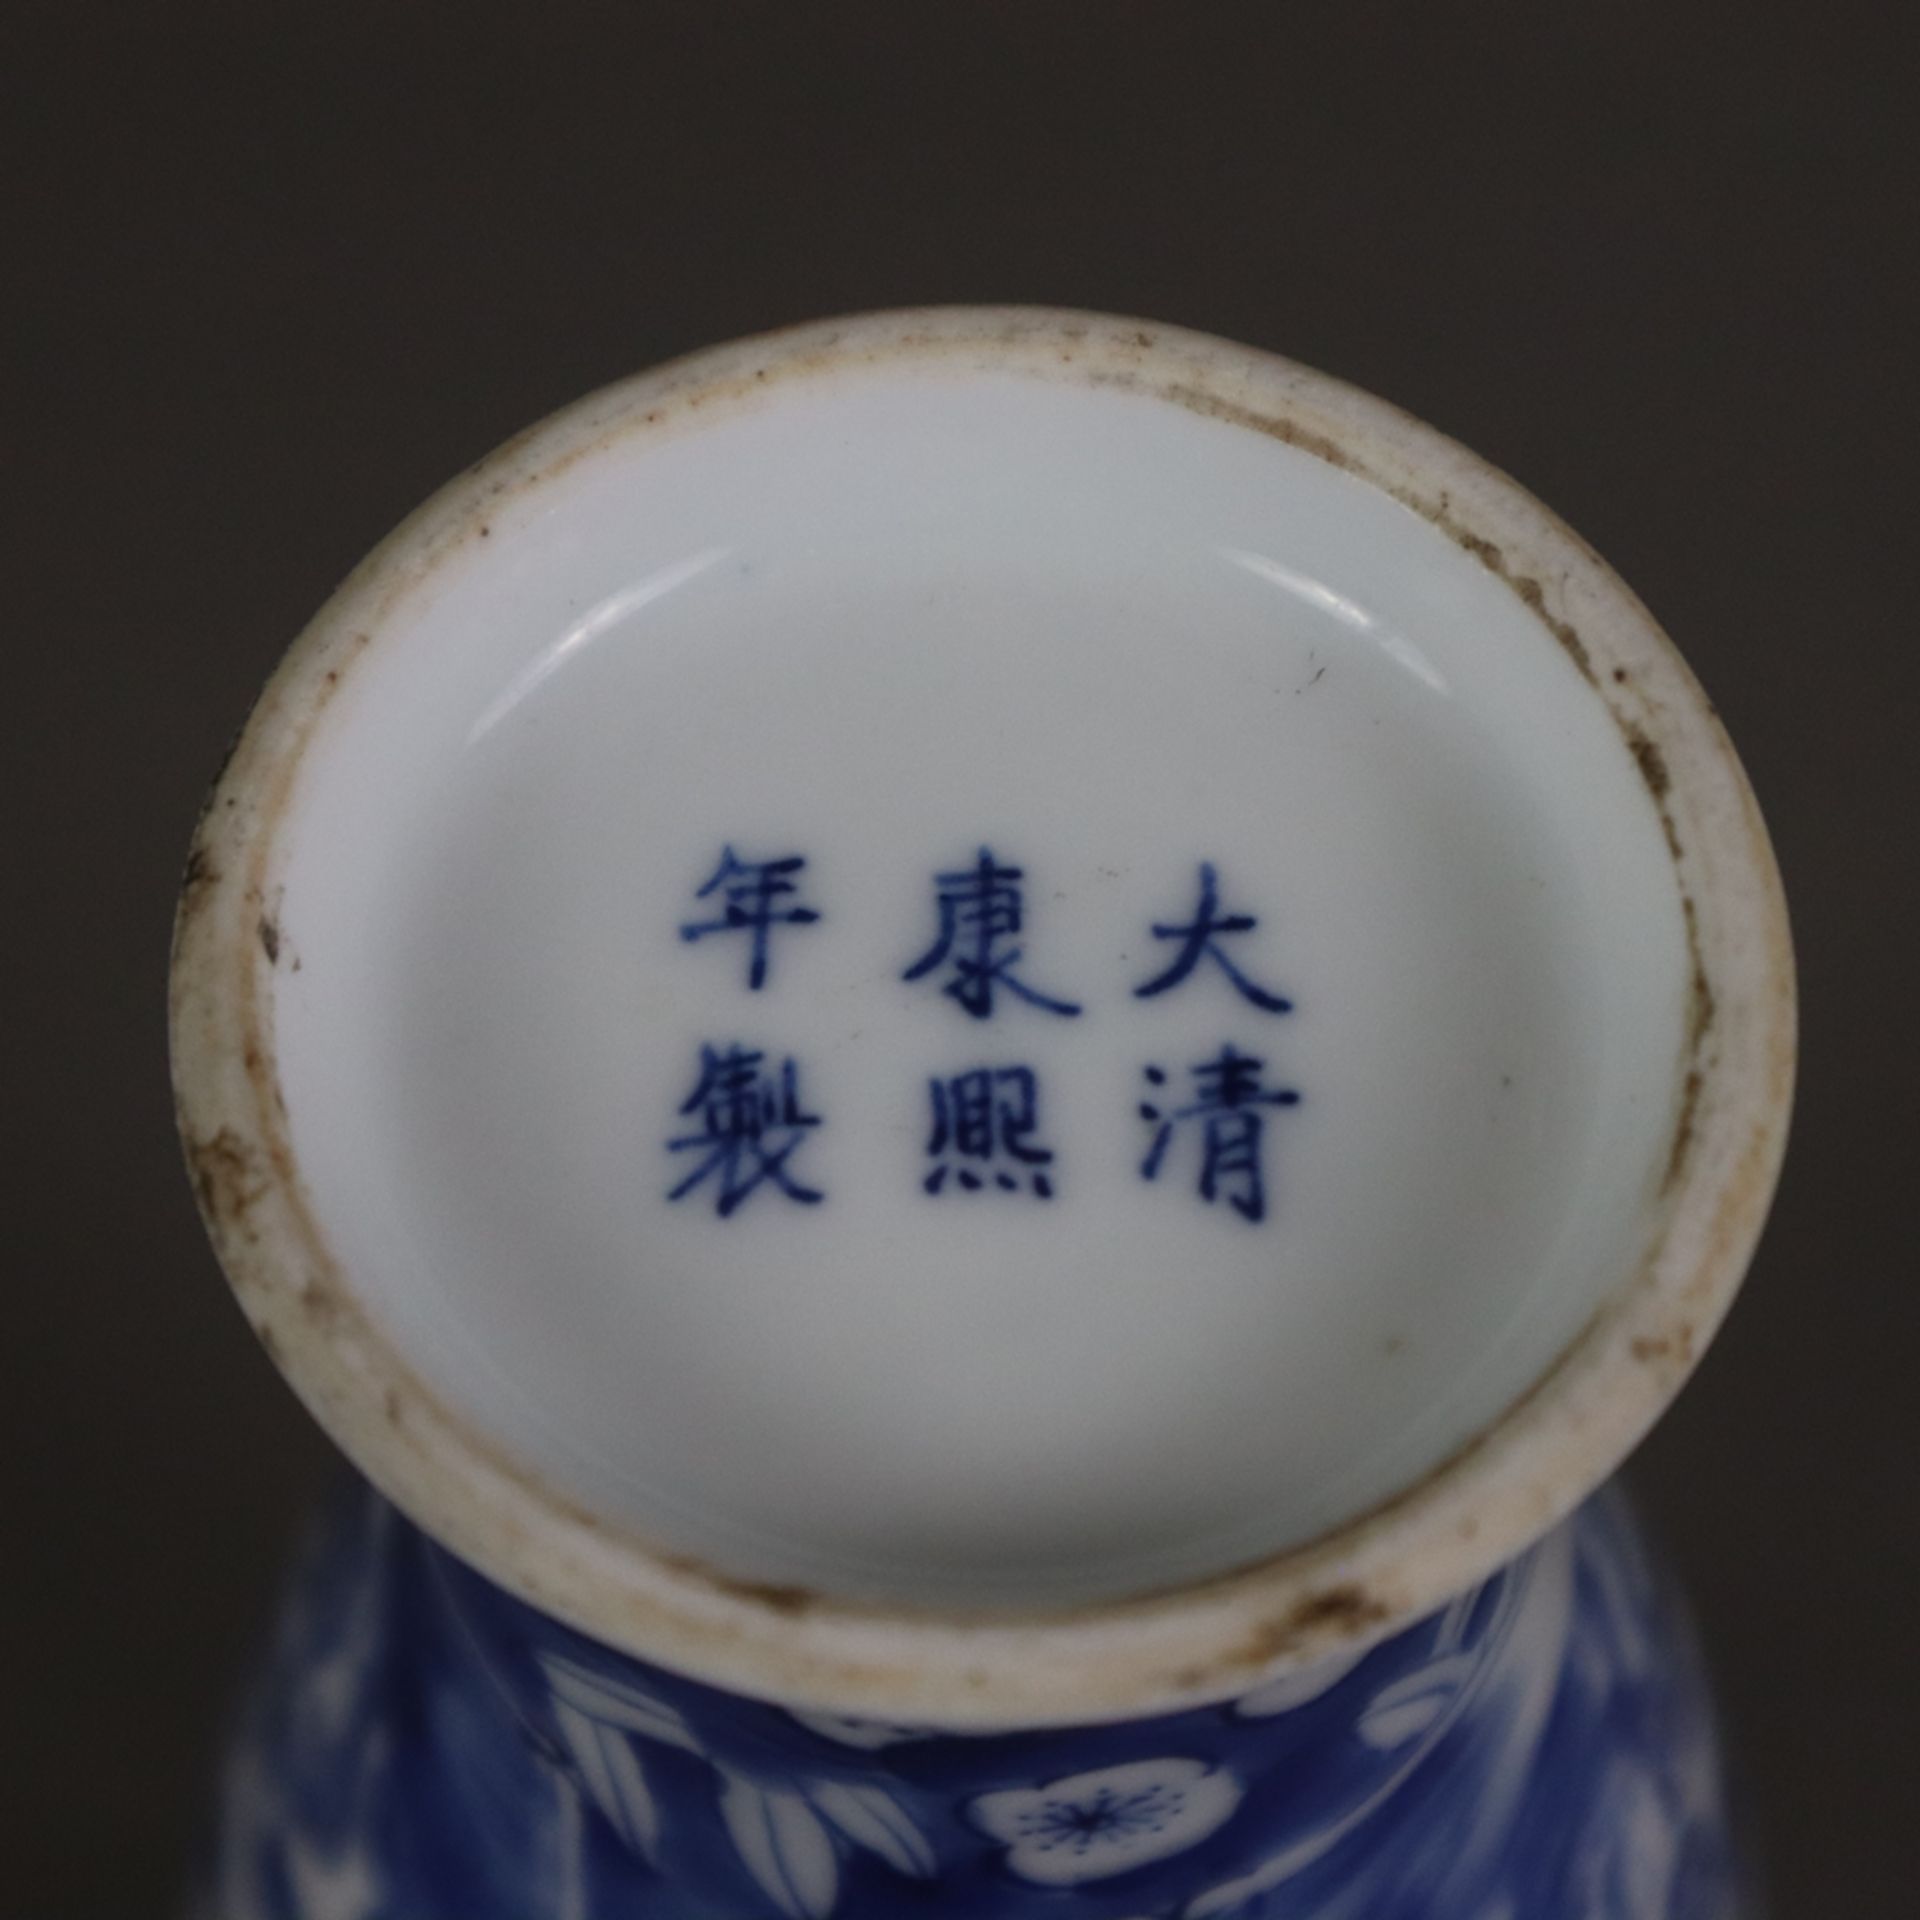 Blau-weiße Balustervase - China 20.Jh., dekoriert in Unterglasurblau mit Pflaumenblüten über gebors - Bild 8 aus 8